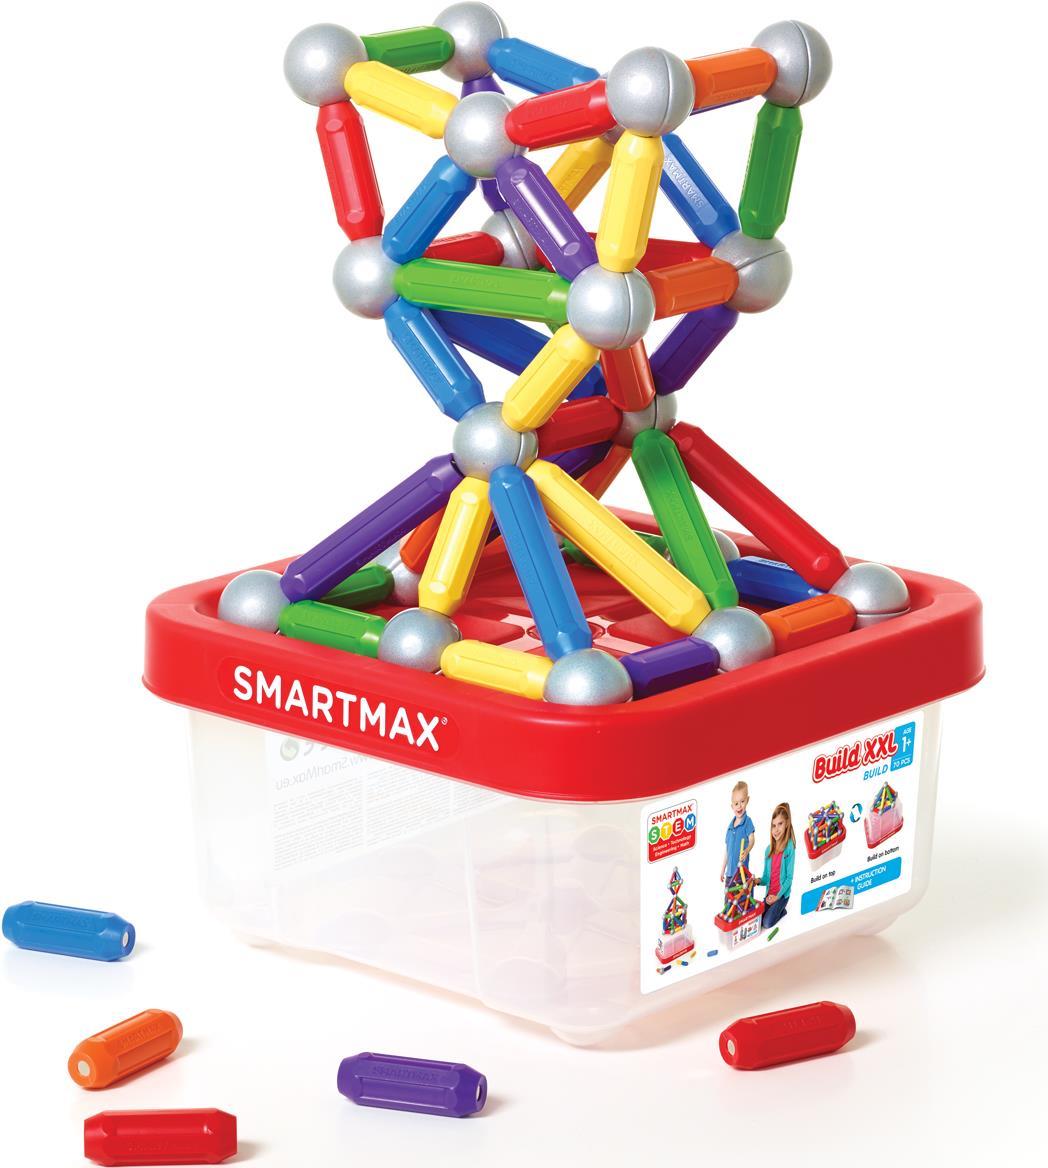 SmartMax Build XXL - Bausatz - Mehrfarbig - 1 Jahr(e) - 70 Stück(e) - Junge/Mädchen - Kinder (SMX 907)